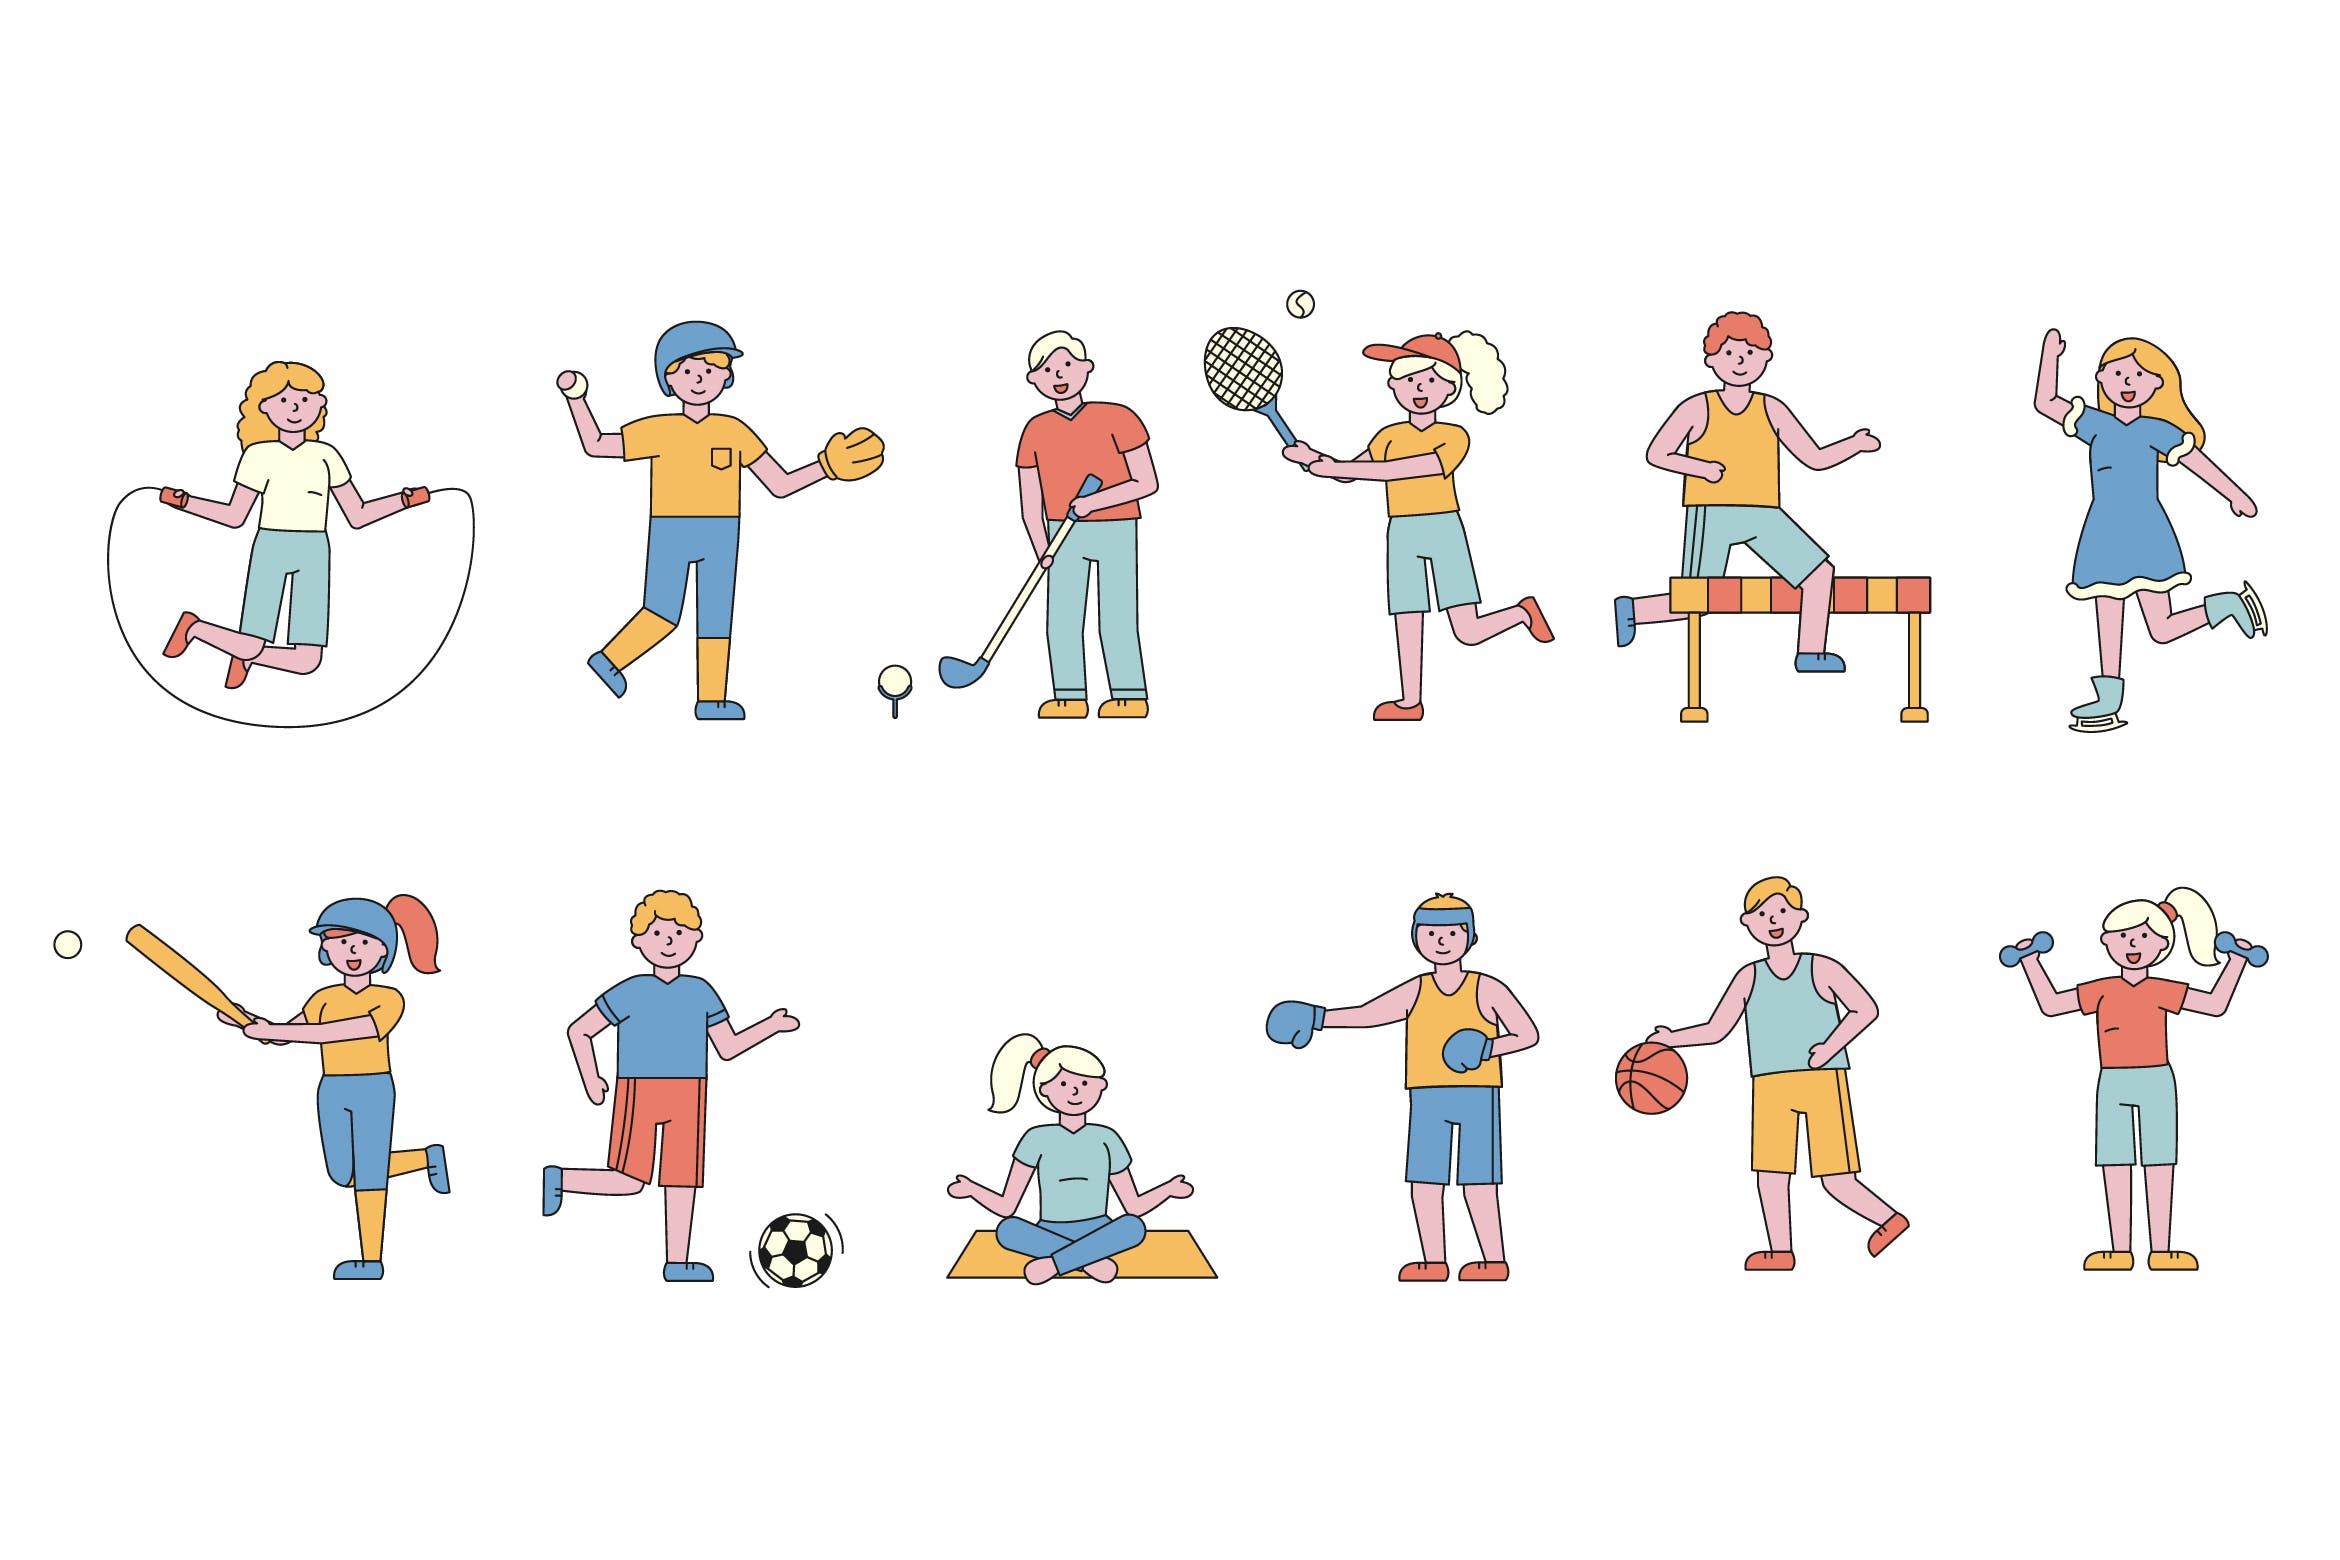 体育运动主题人物形象线条艺术矢量插画普贤居精选素材 Sportsmen Lineart People Character Collection插图